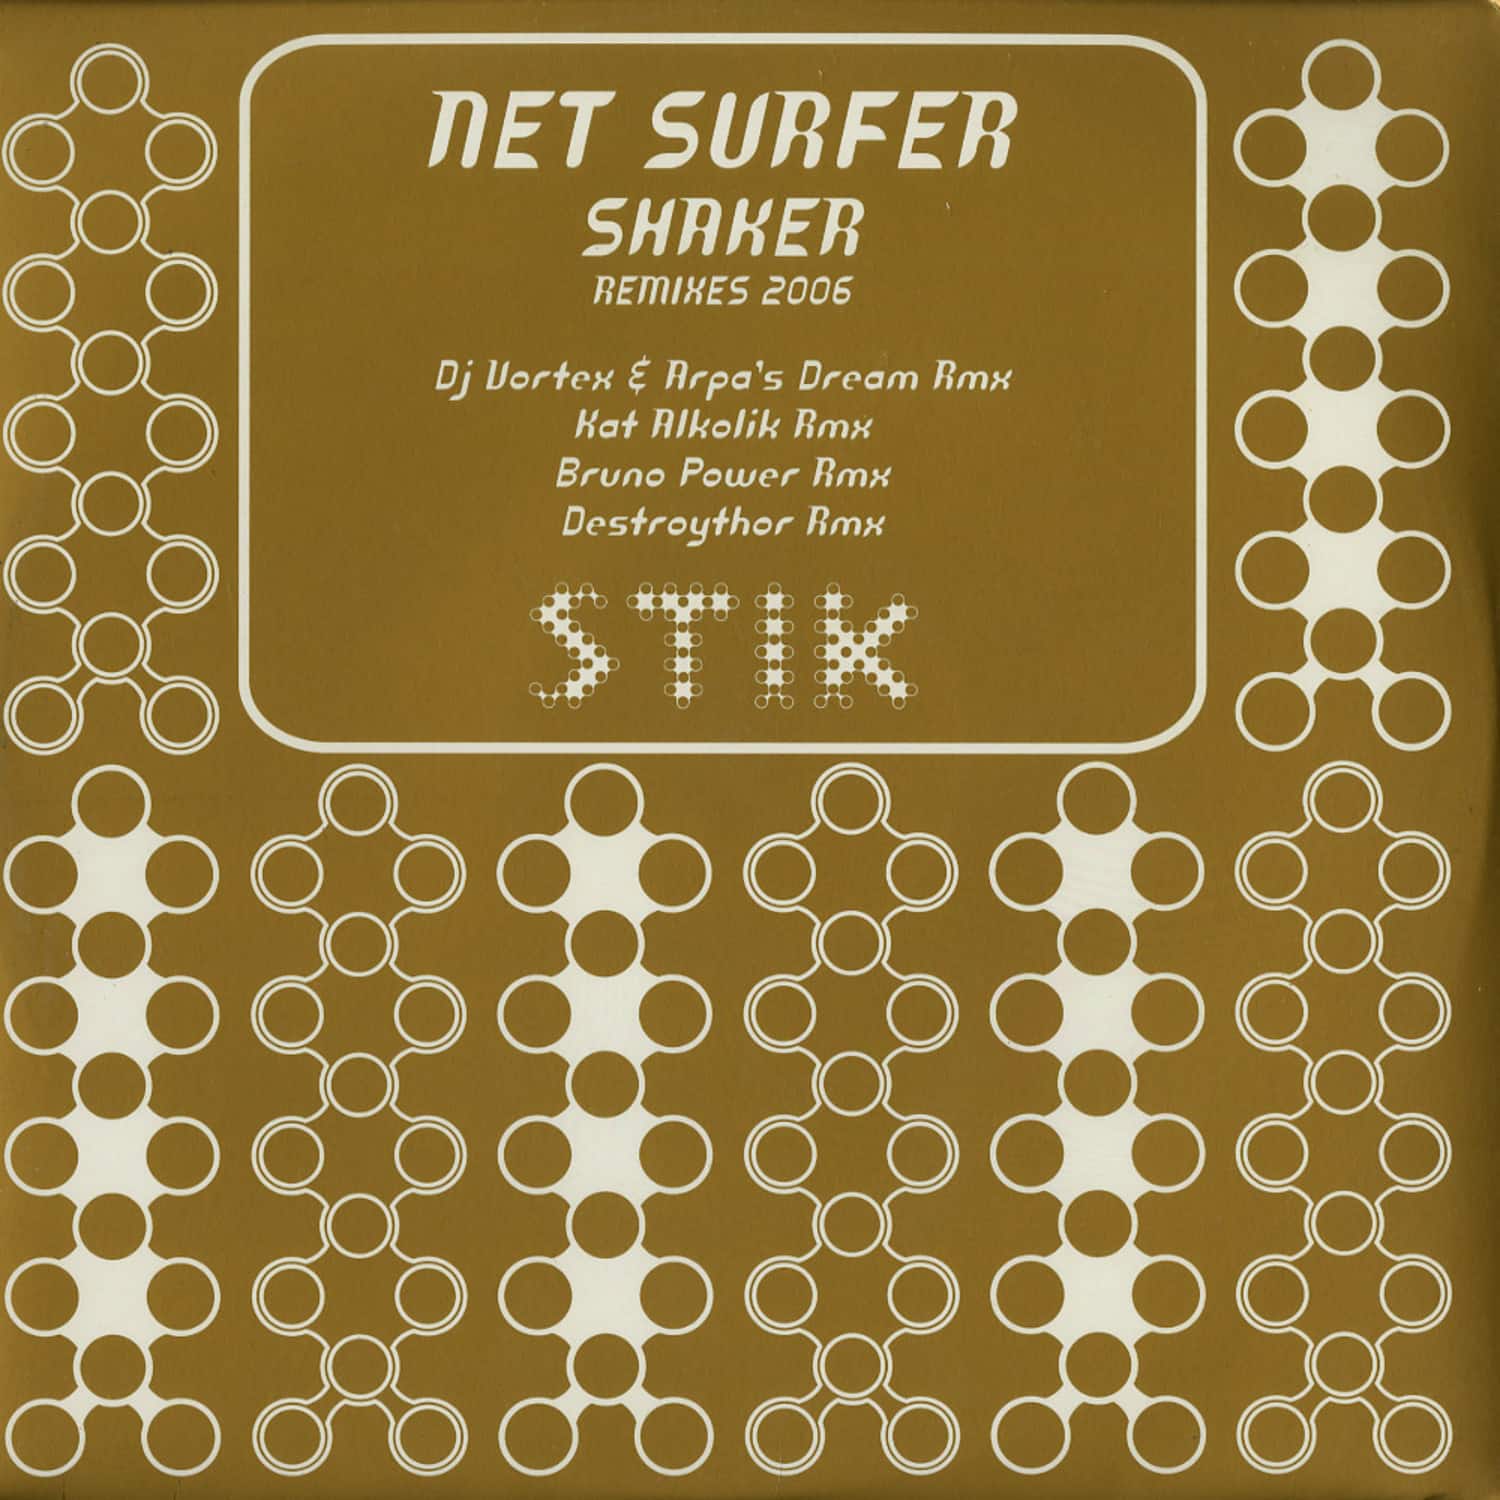 Net Surfer - SHAKER - REMIXES 2006